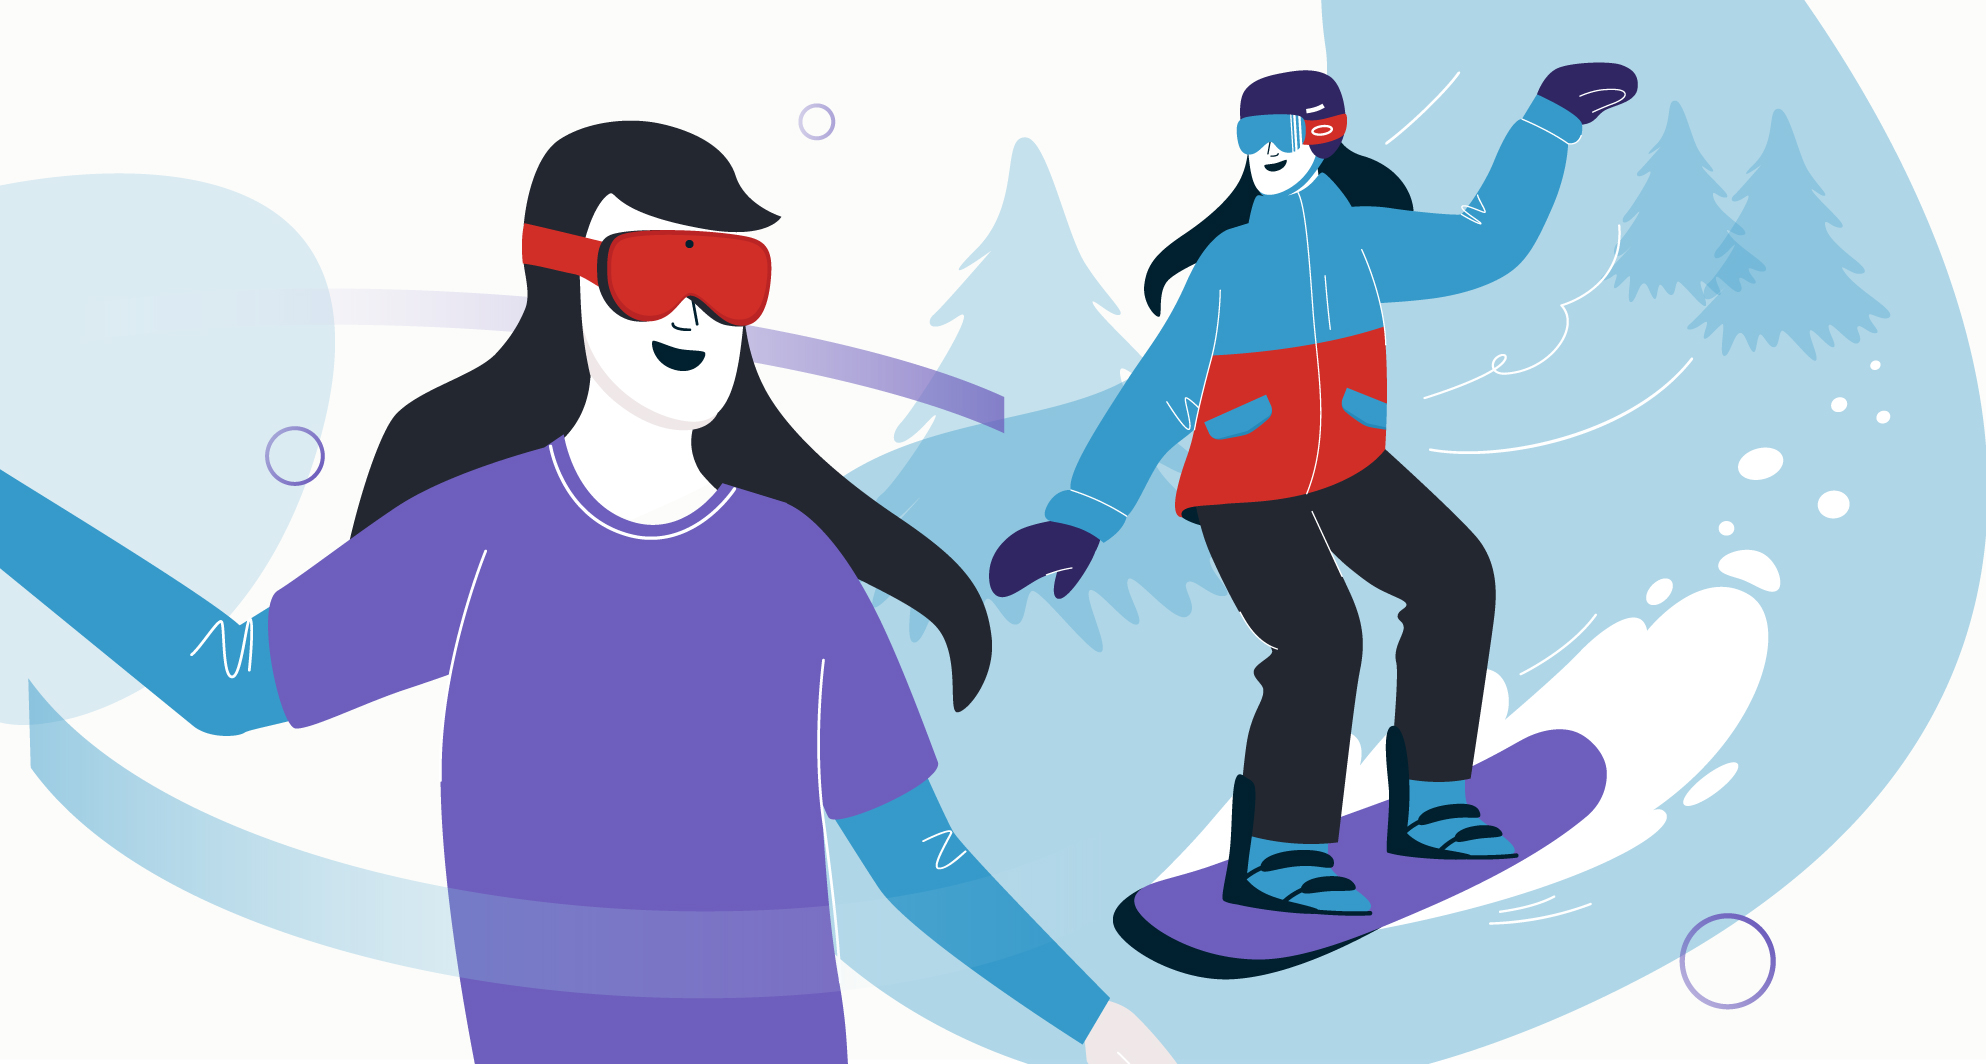 Comparaison entre une athlète en planche à neige et une personne utilisant un casque de réalité virtuelle (VR)